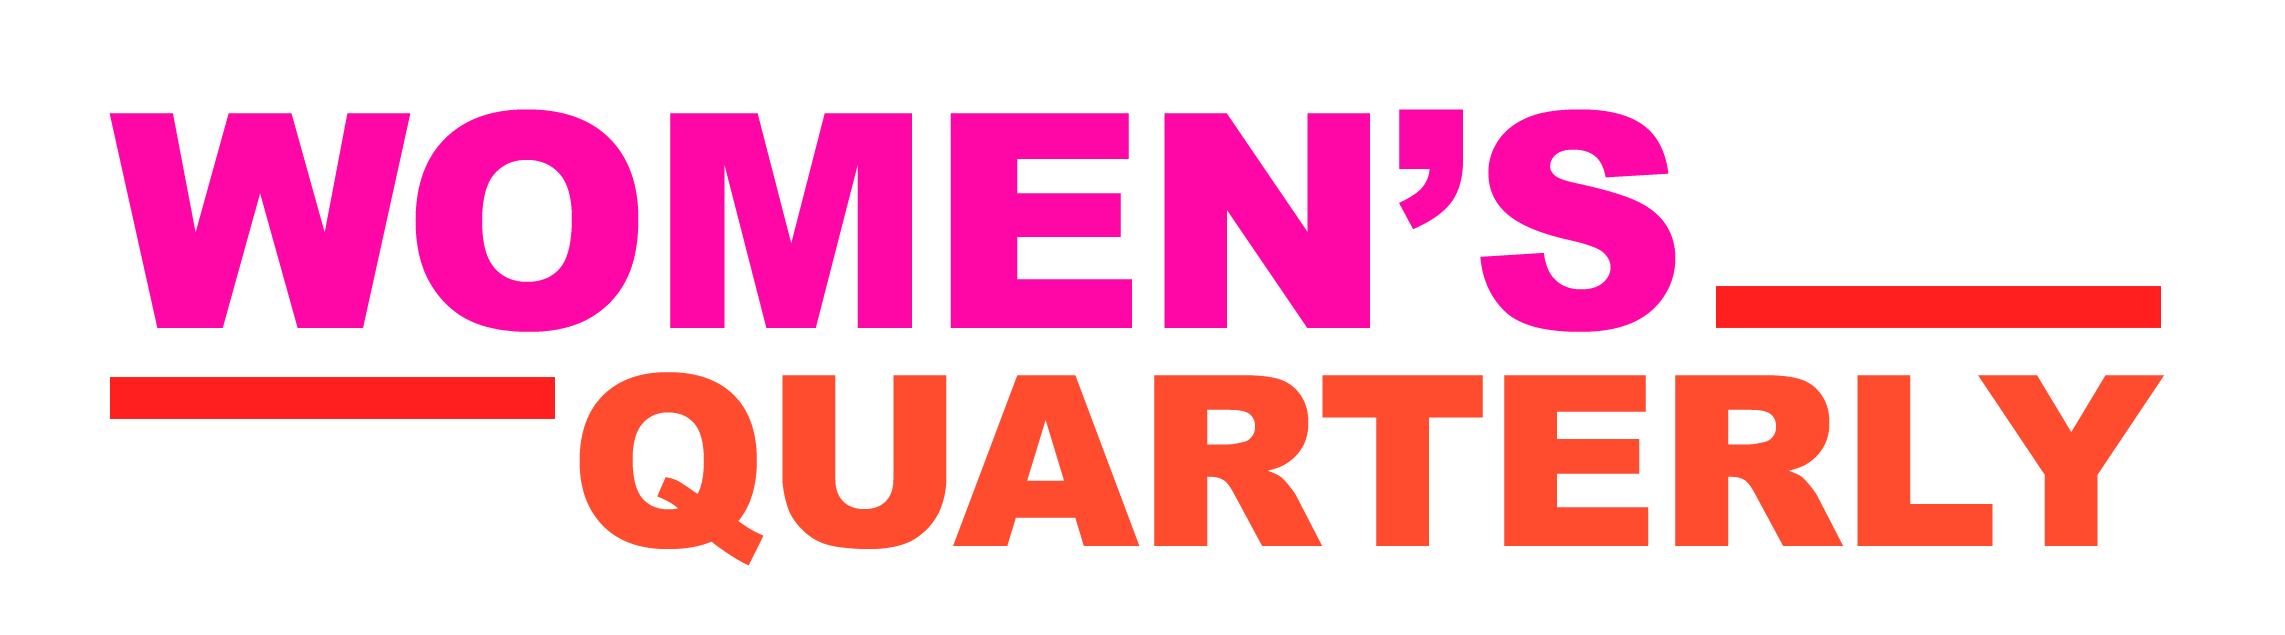 Women’s Quarterly cover art- twitter